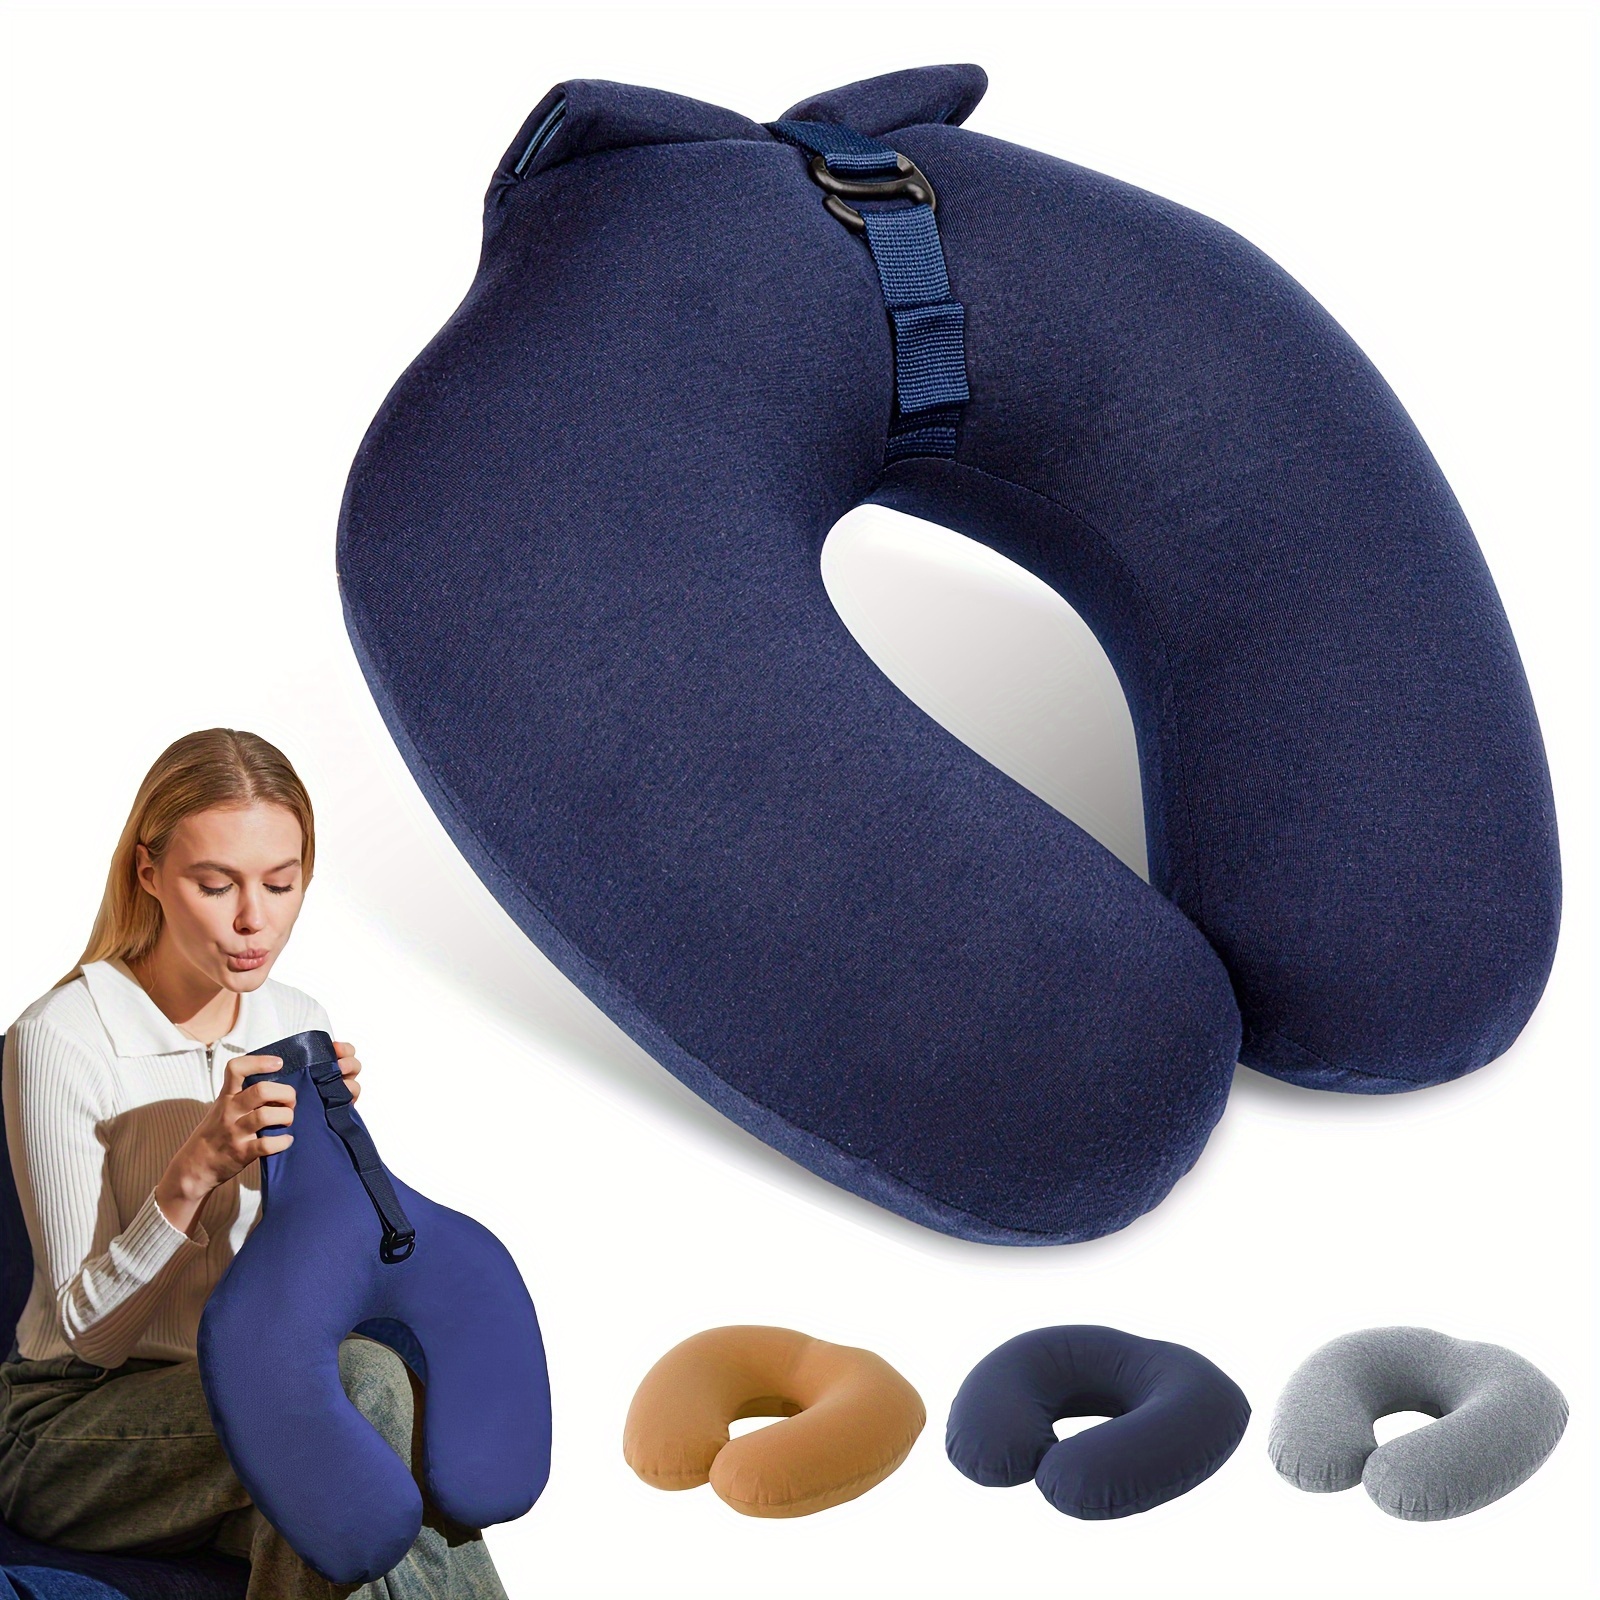 Almohada inflable portátil para pies, cojín de apoyo para rodillas, con  bomba de inflado, para dormir